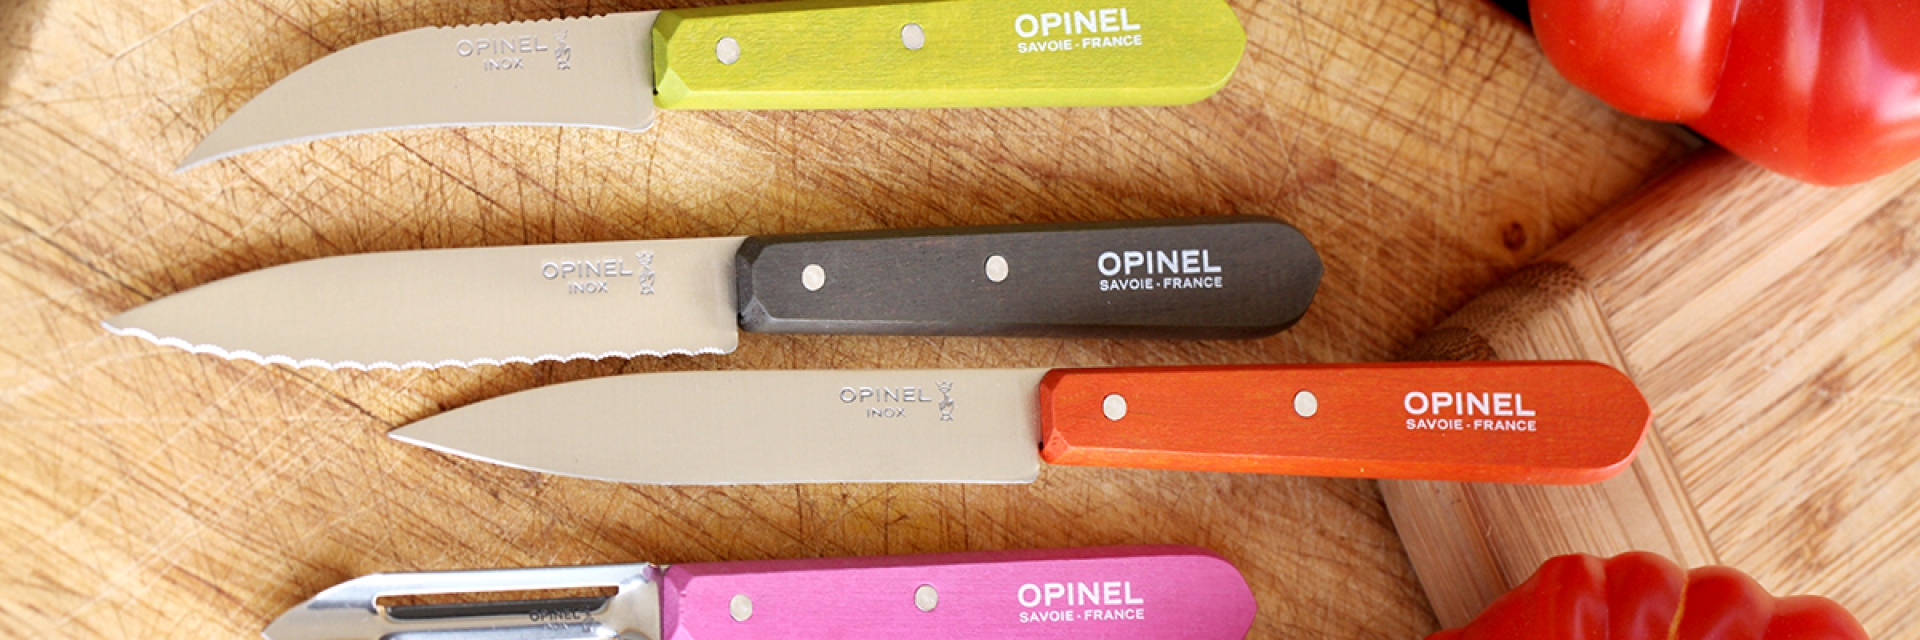 OPINEL набор французских кухонных ножей 